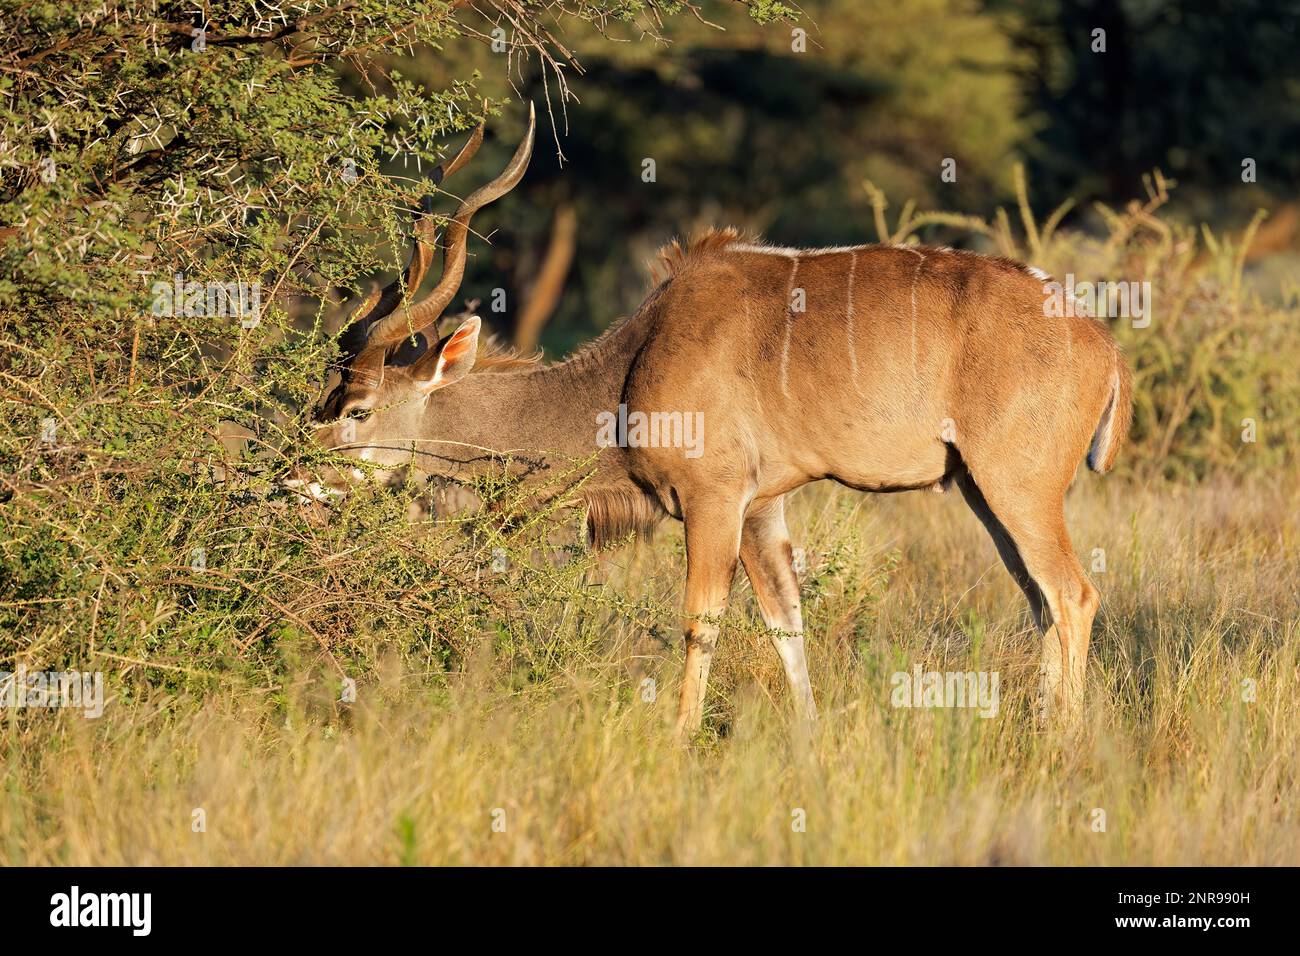 Male kudu antelope (Tragelaphus strepsiceros) feeding in natural habitat, Mokala National Park, South Africa Stock Photo